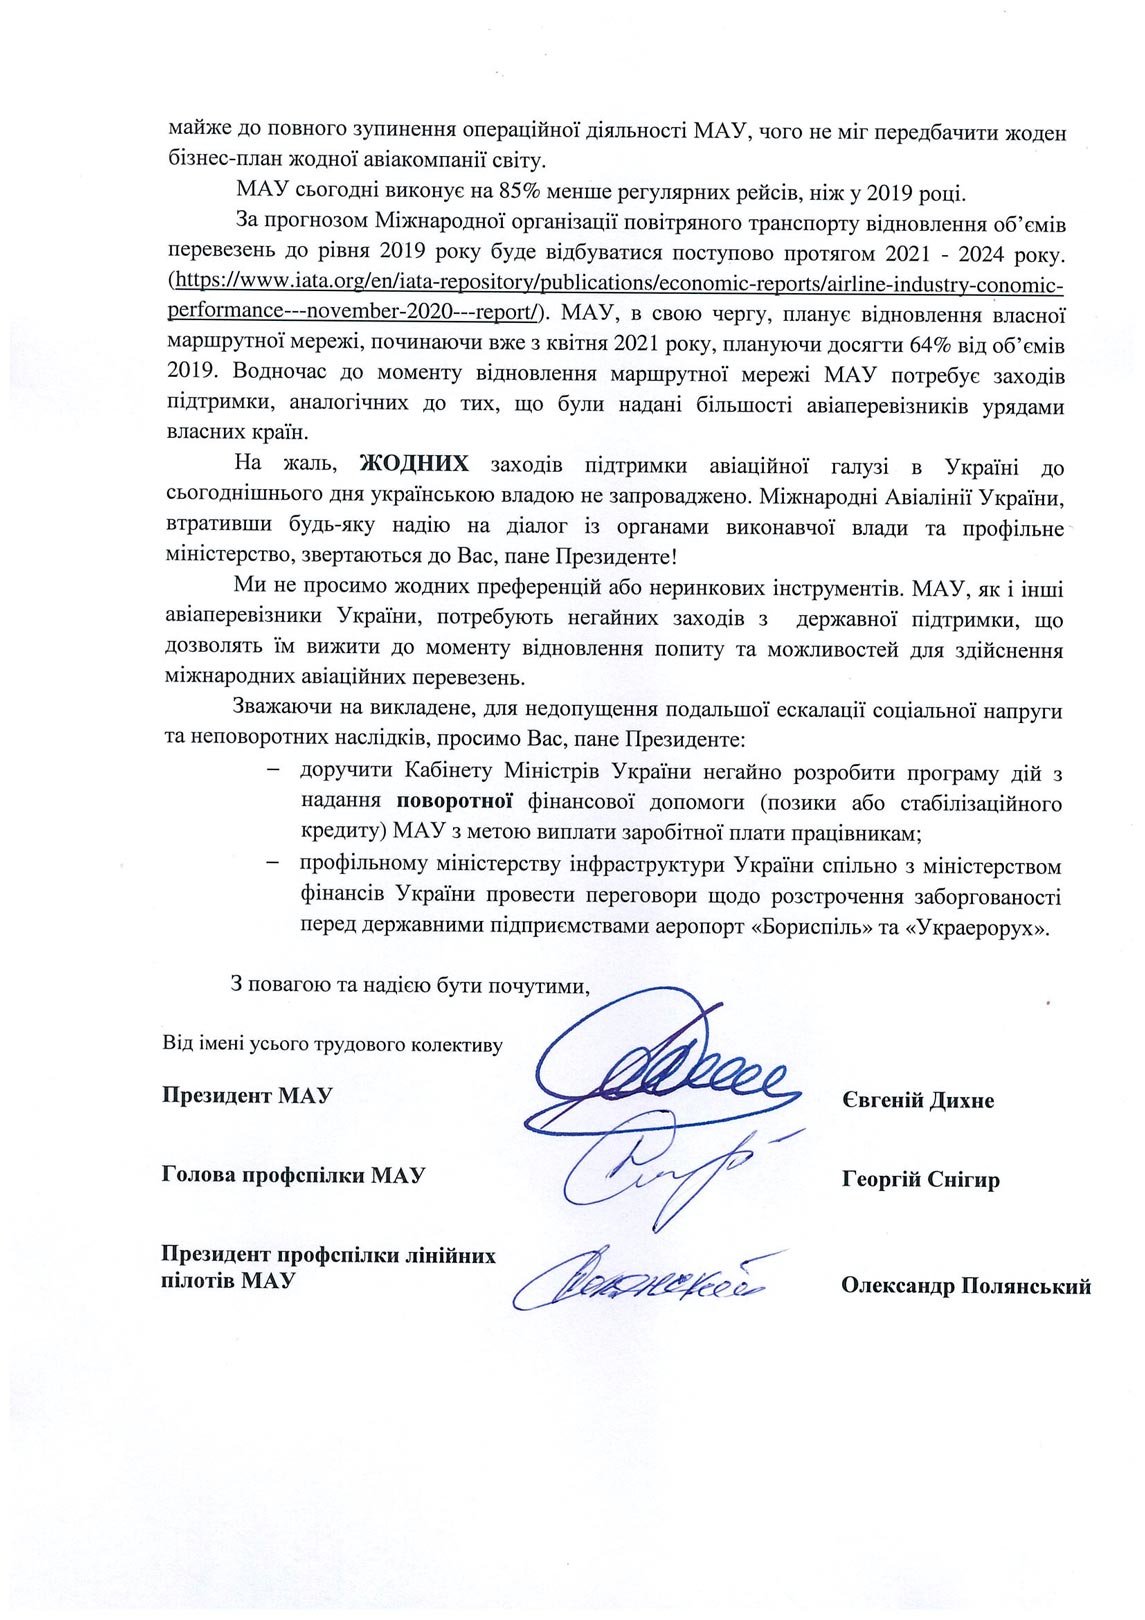 Украинская авиакомпания сделала срочное обращение к Зеленскому - фото 4